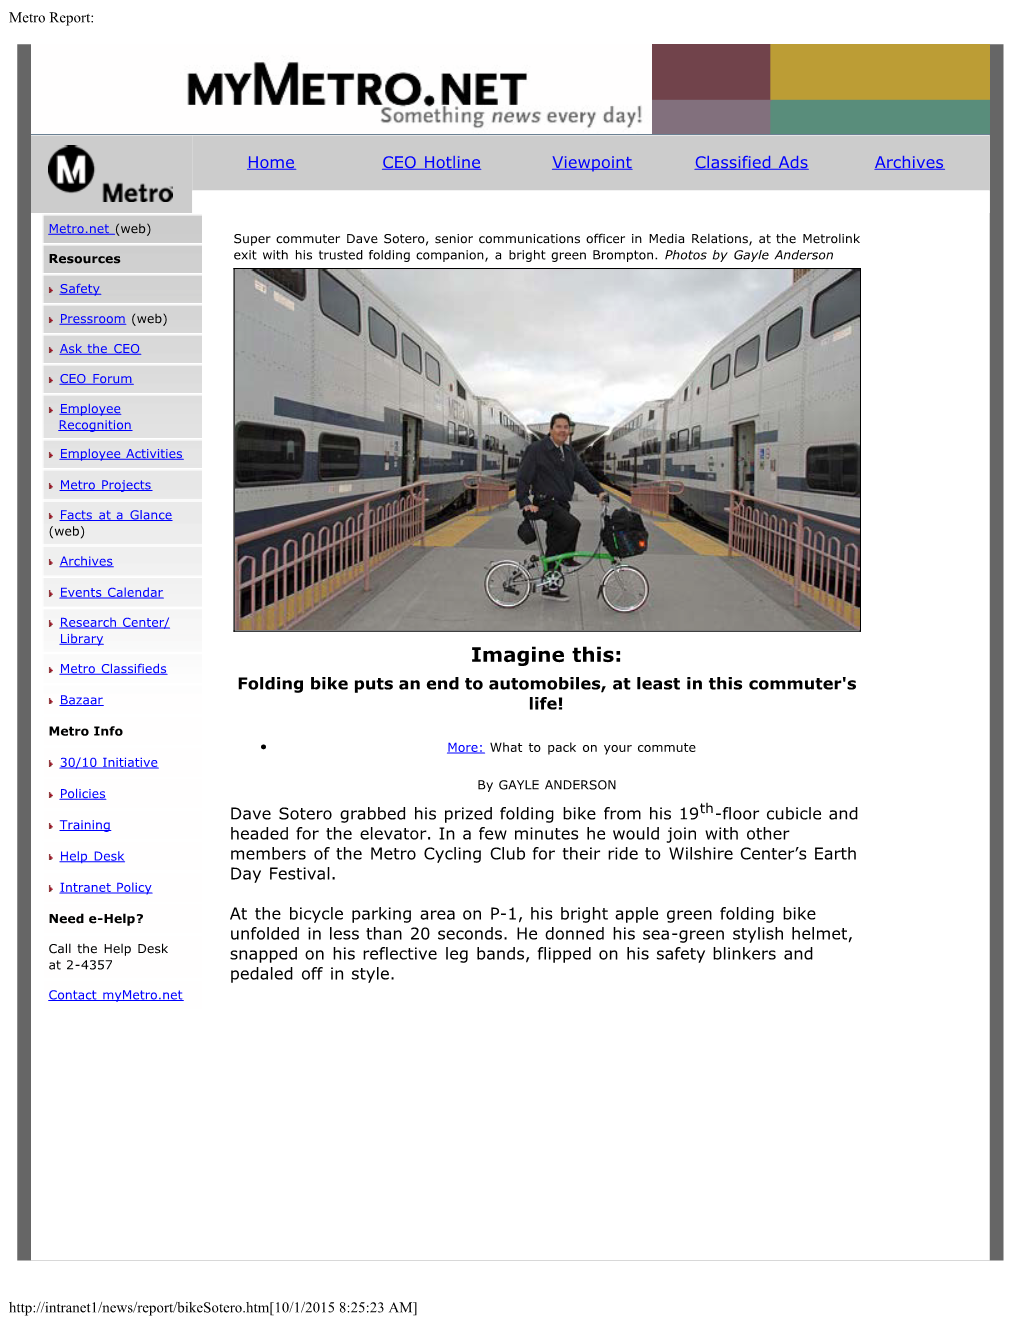 MTA Report April 2008